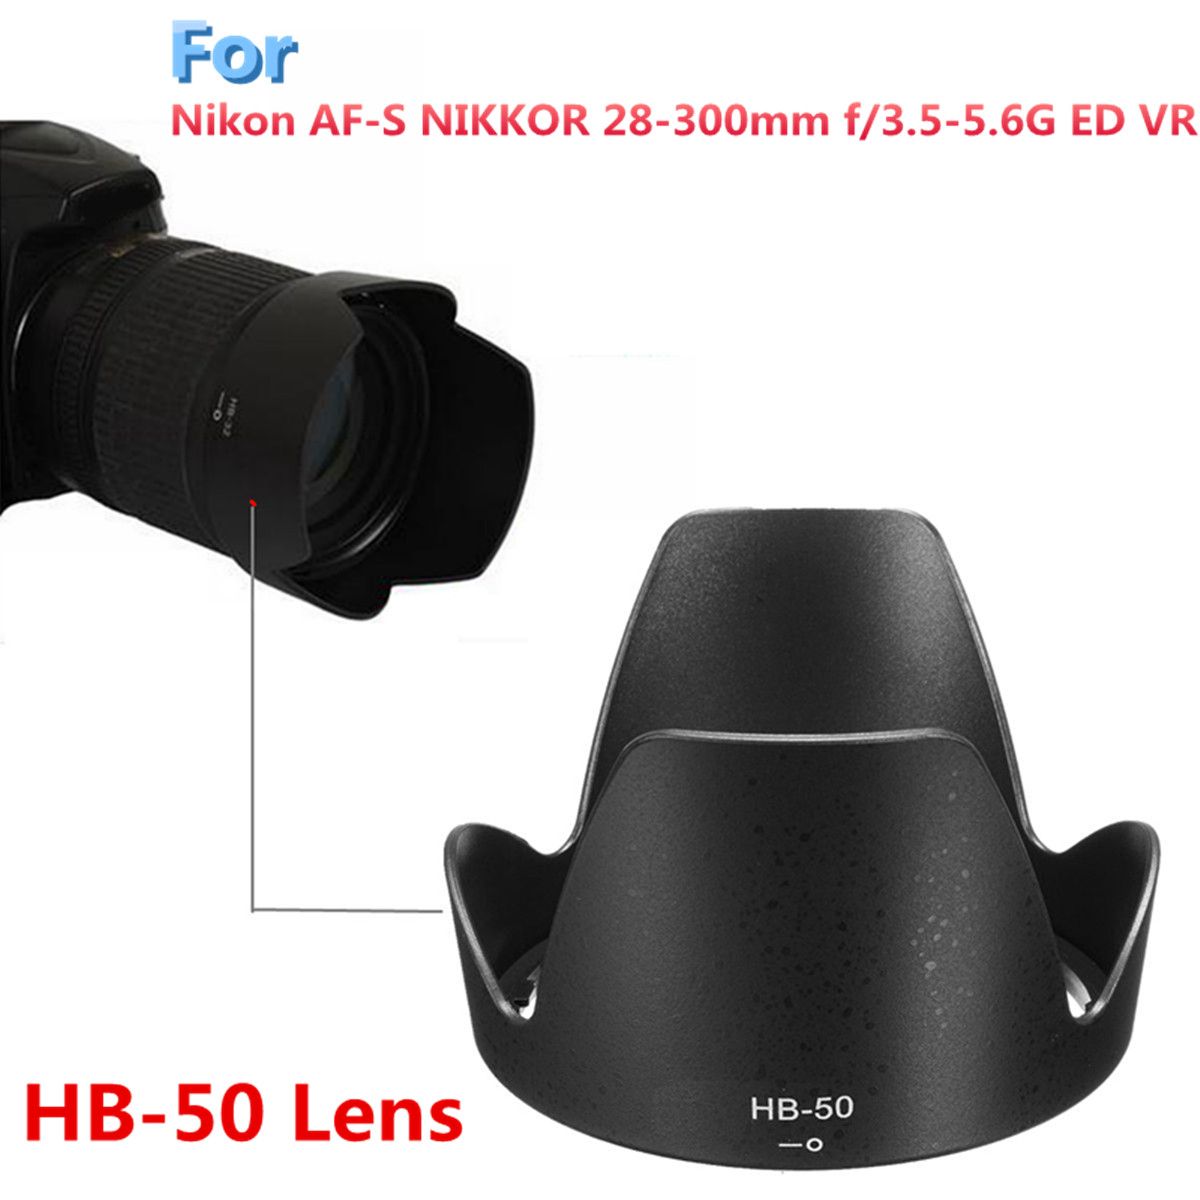 HB-50-Bayonet-Lens-Hood-for-Nikon-AF-S-28-300mm-f35-56G-ED-VR-Lens-1263989